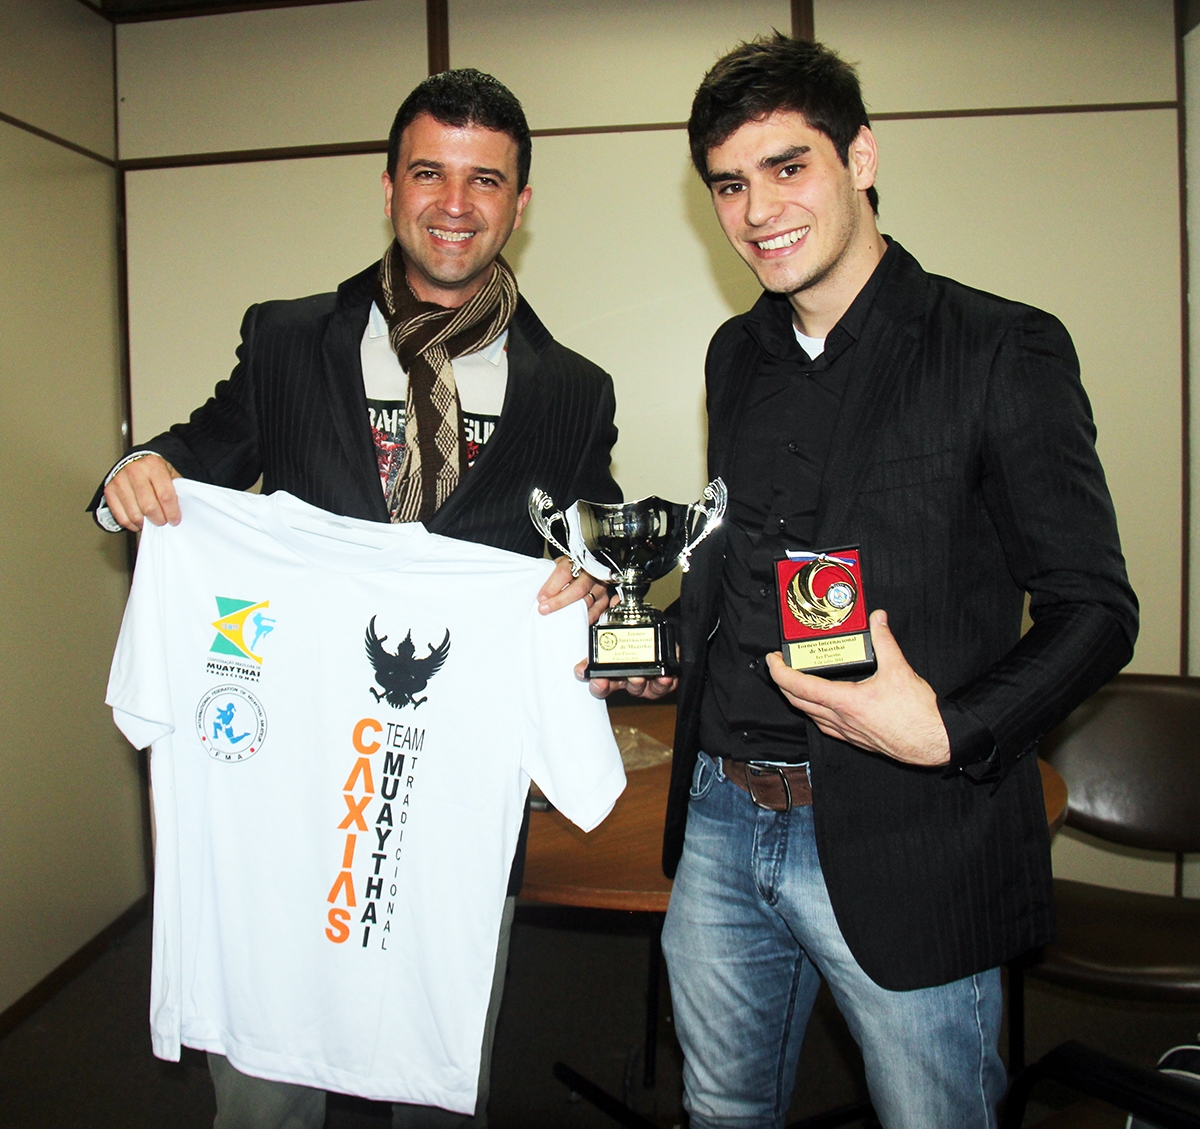 Vereador Neri, O Carteiro recebe o campeão de muay thai Felipe de Gois